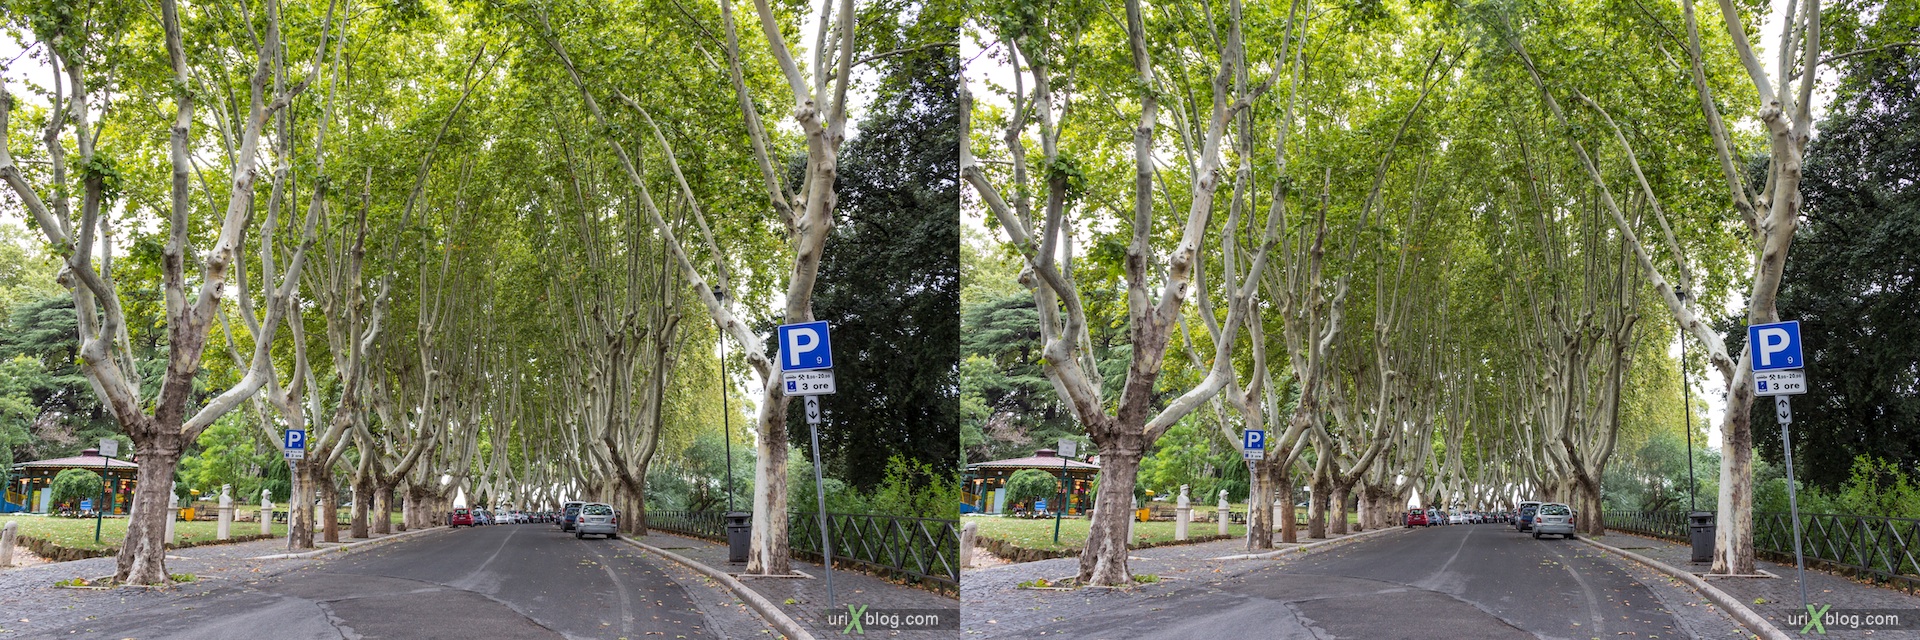 2012, улица Passeggiata del Gianicolo, платаны, деревья, Рим, Италия, осень, 3D, перекрёстные стереопары, стерео, стереопара, стереопары